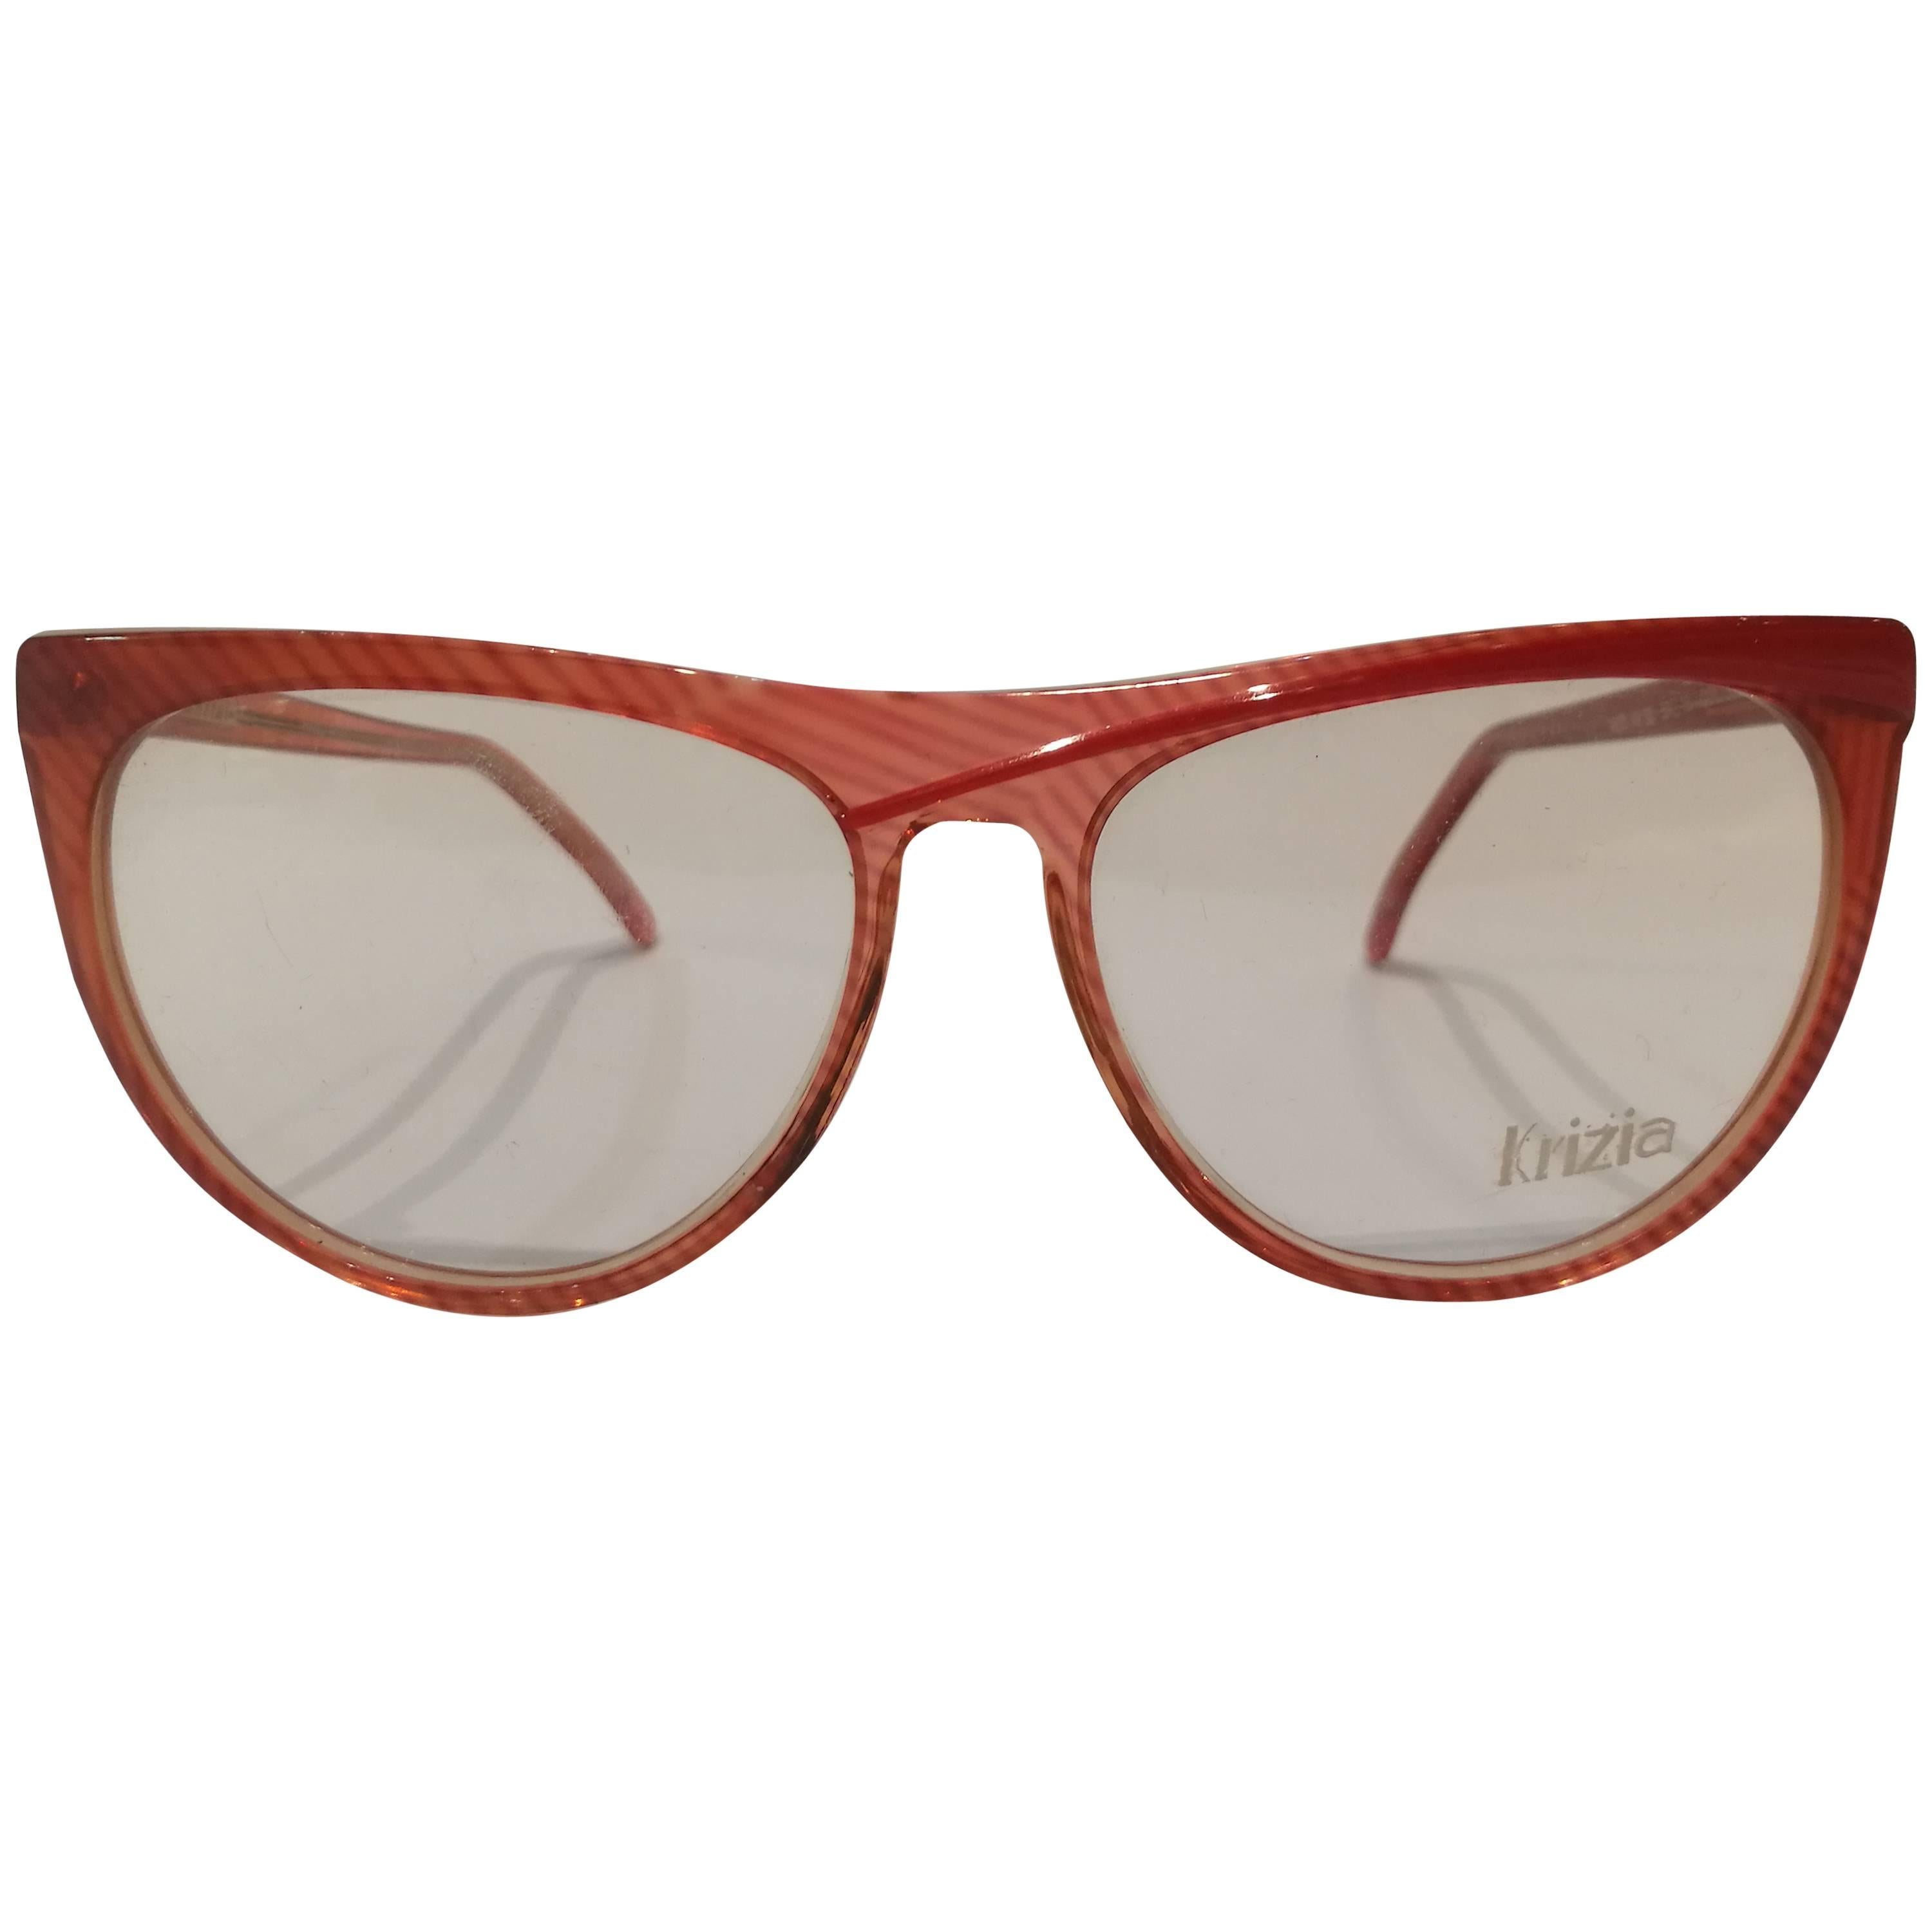 Krizia vintage red frame glasses For Sale